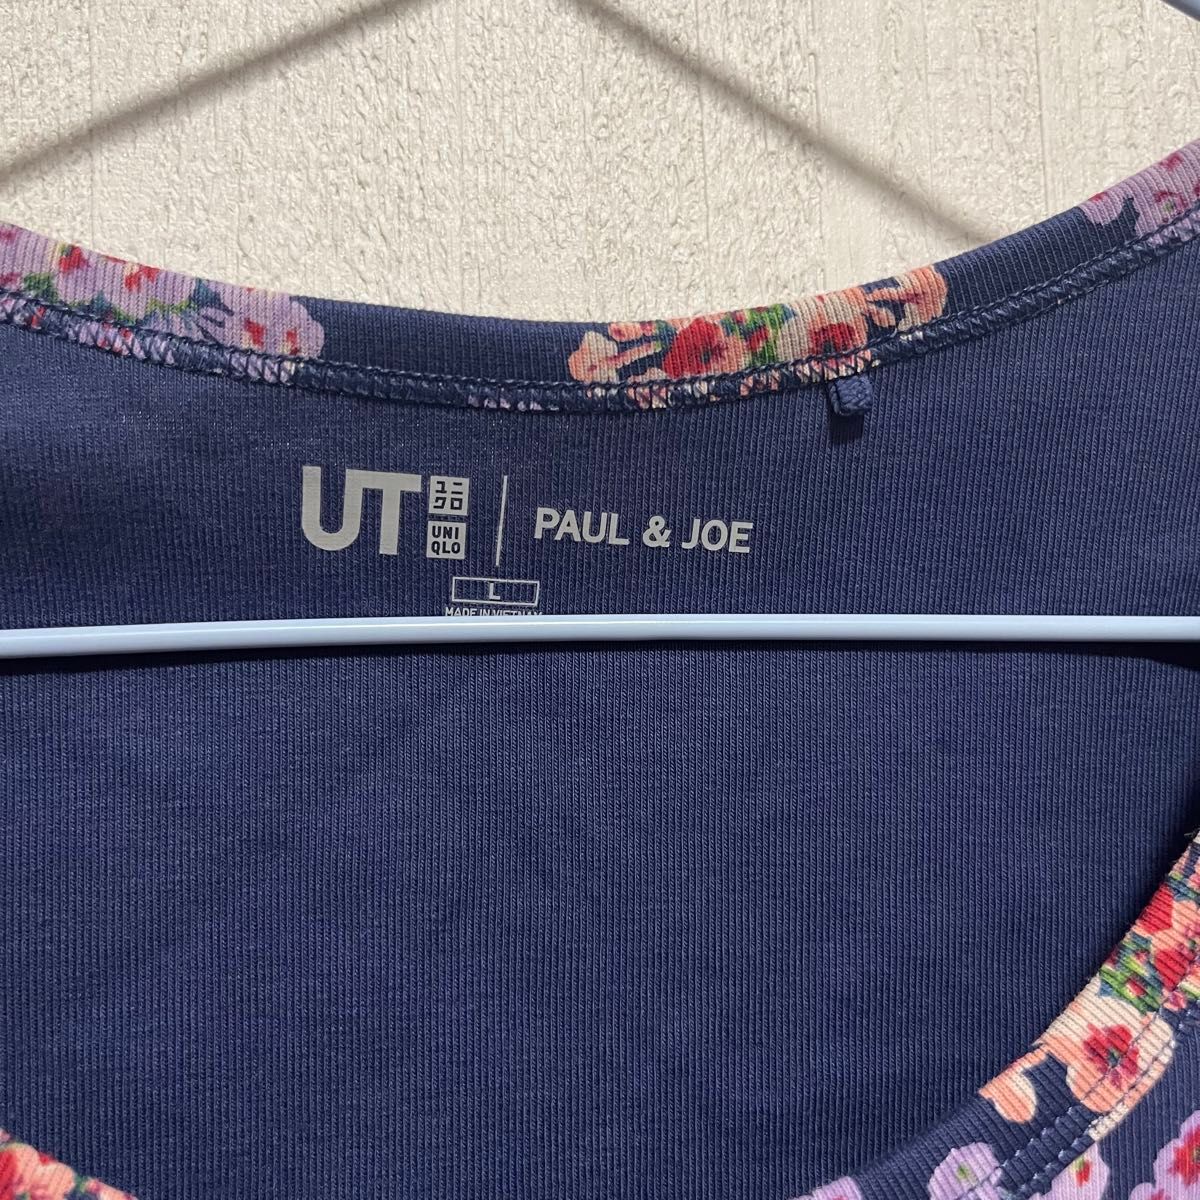 《タグなし新品》 UNIQLO ユニクロ PAUL&JOE 半袖Tシャツ カットソー 花柄 トップス